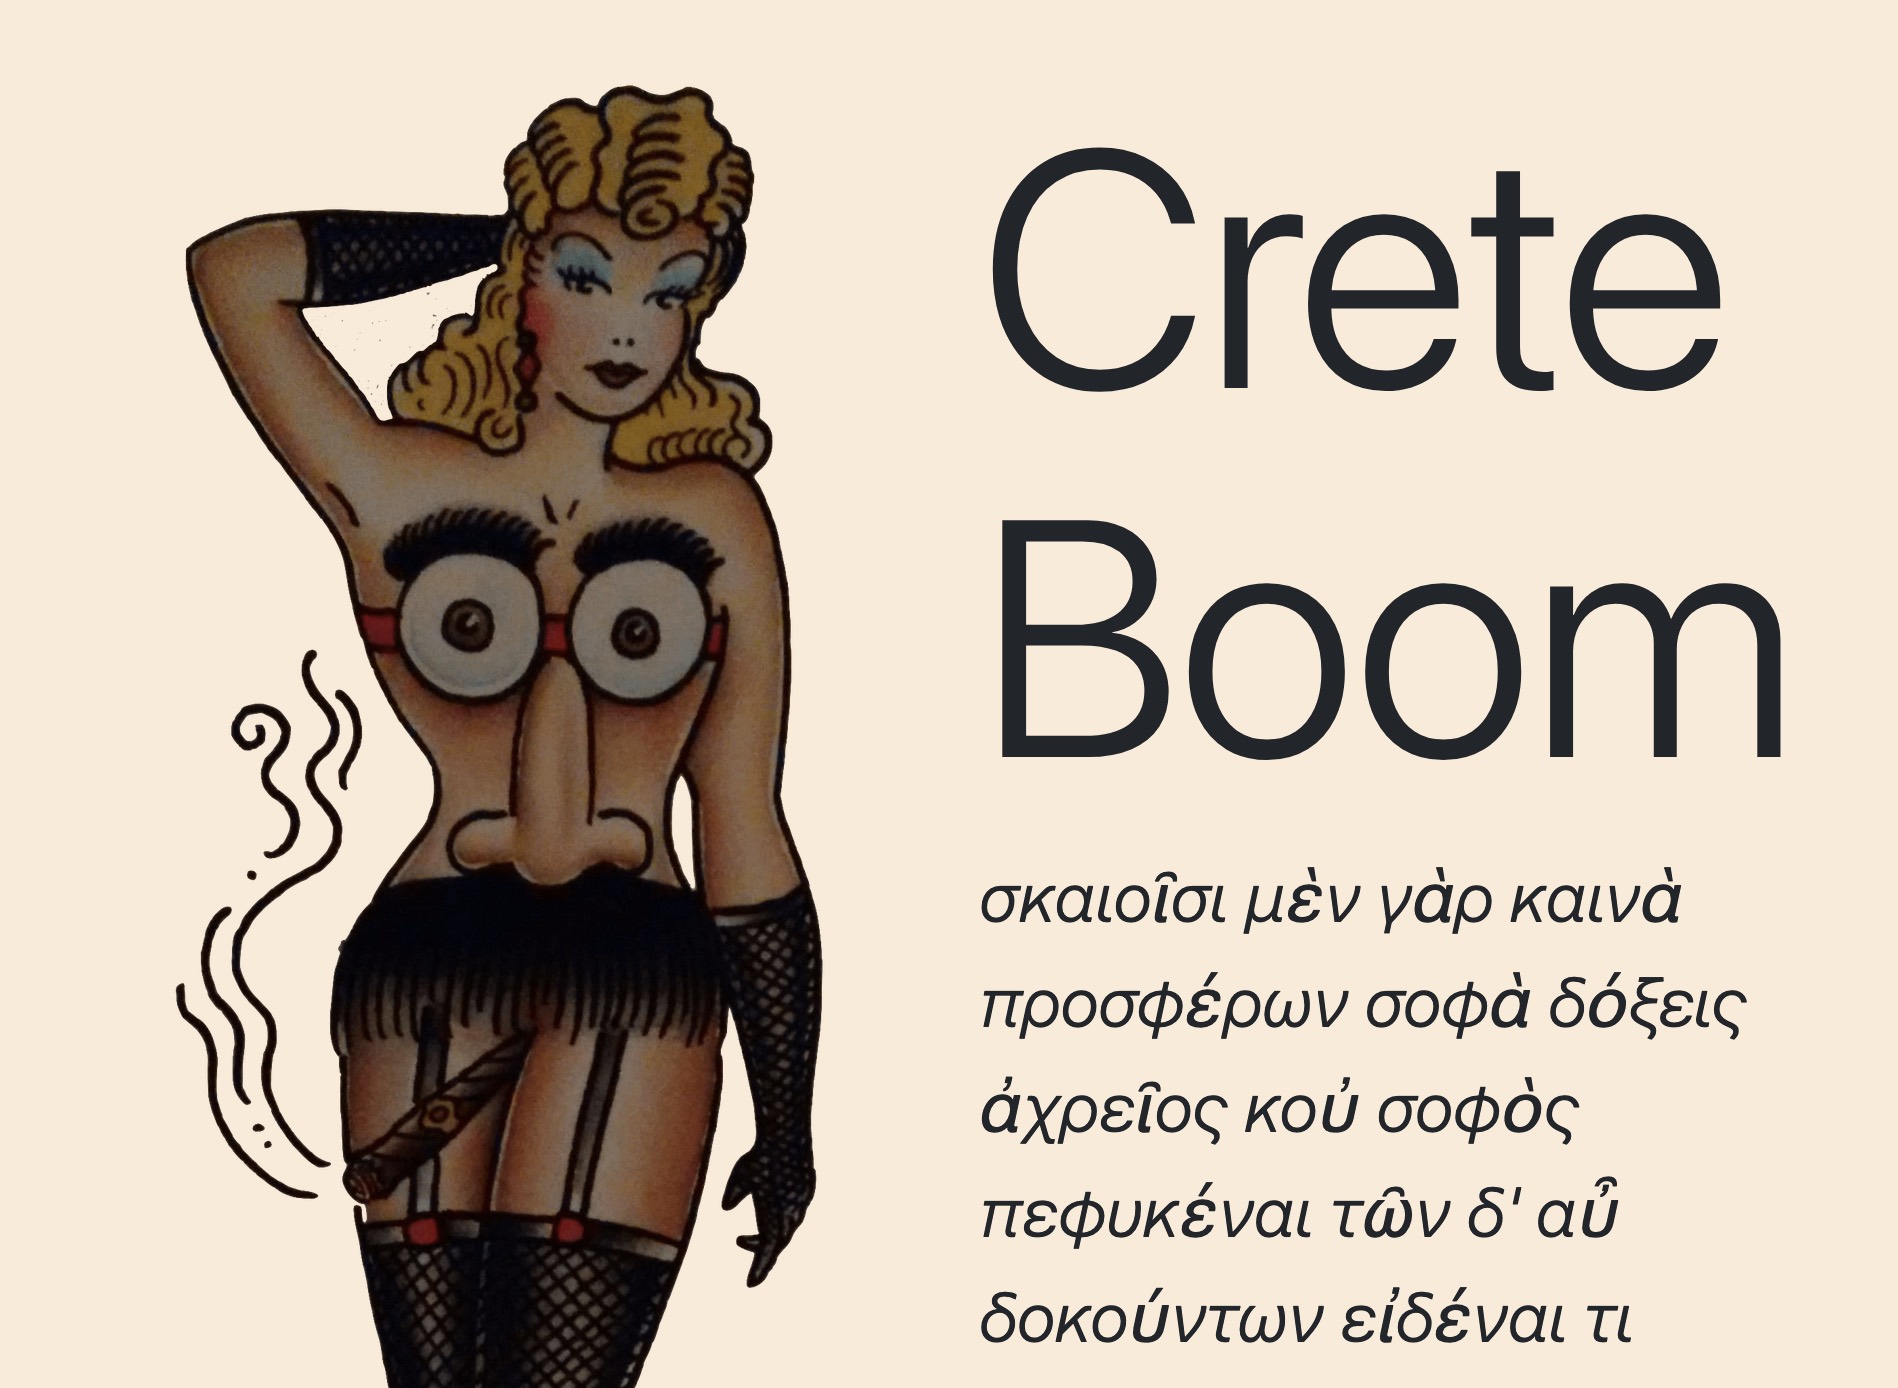 Crete Boom music